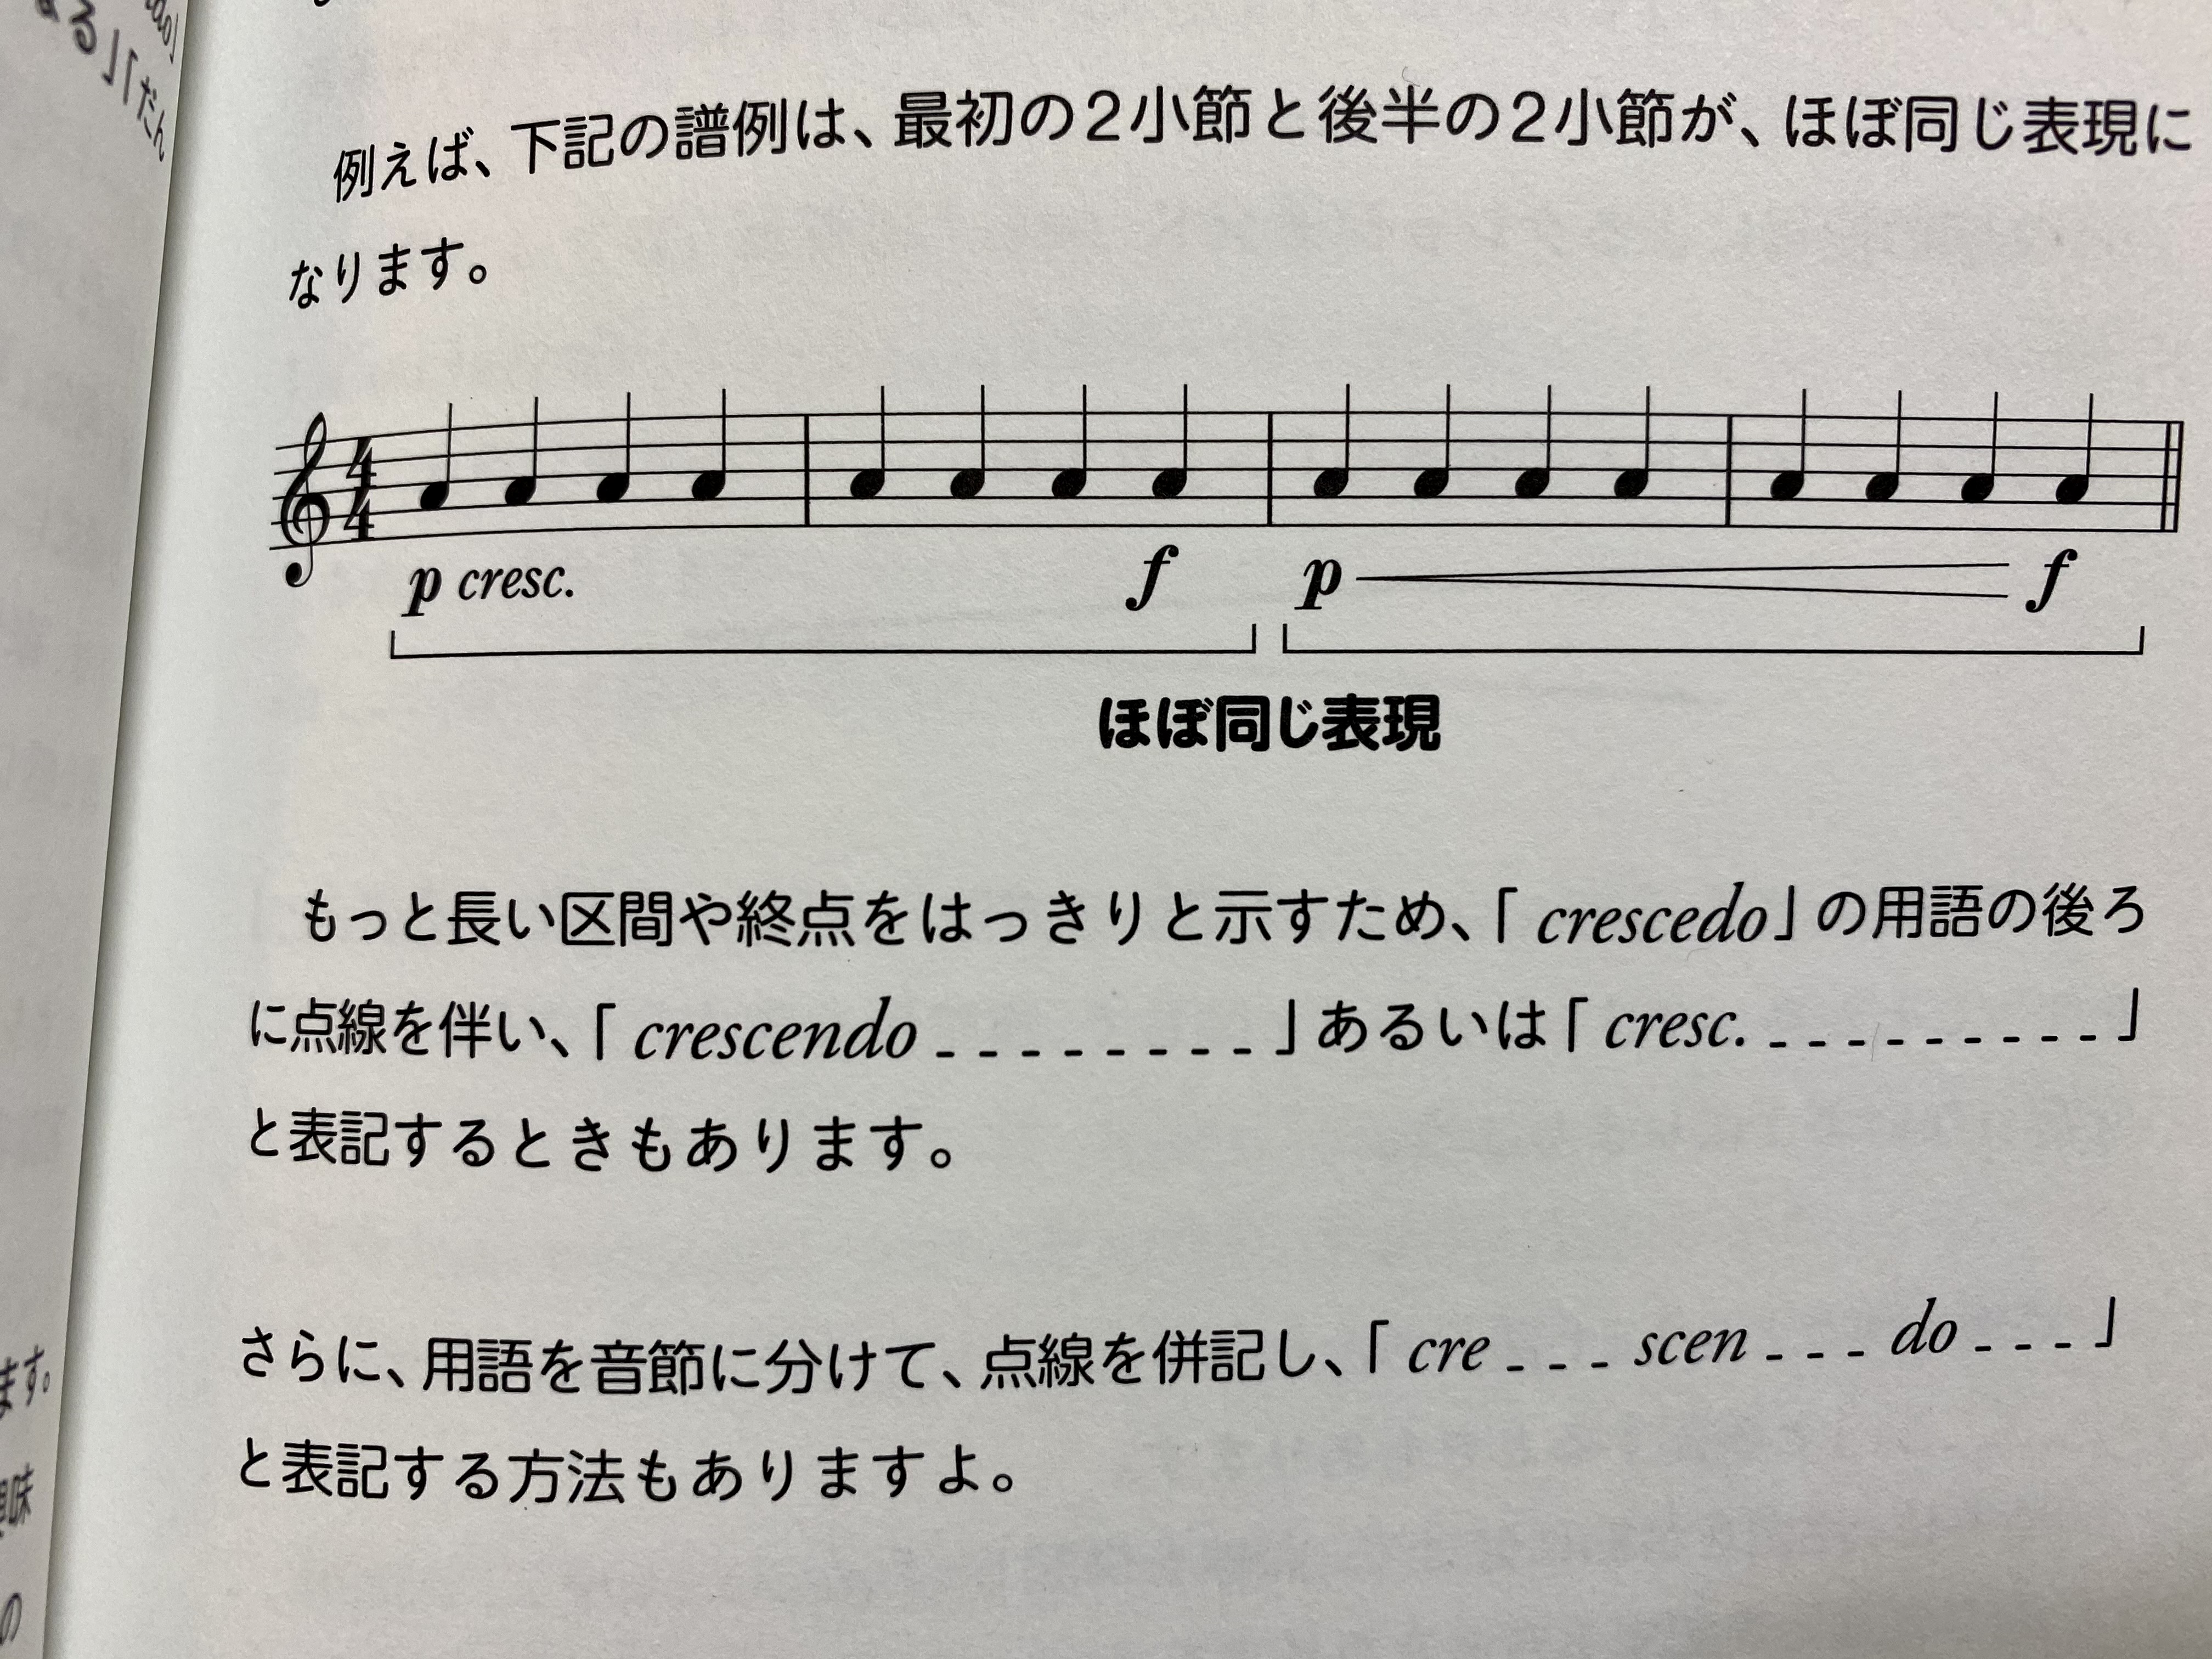 侘美秀俊 Hidetoshi Takumi の松葉と Cresc の文字の違い よく尋ねられるのだが 使用例としては 範囲 区間の違い 効果に違いはないような 文字の場合は Crescendoの略である ピリオド を忘れずに あと複数にわけて点線で繋ぐ時は